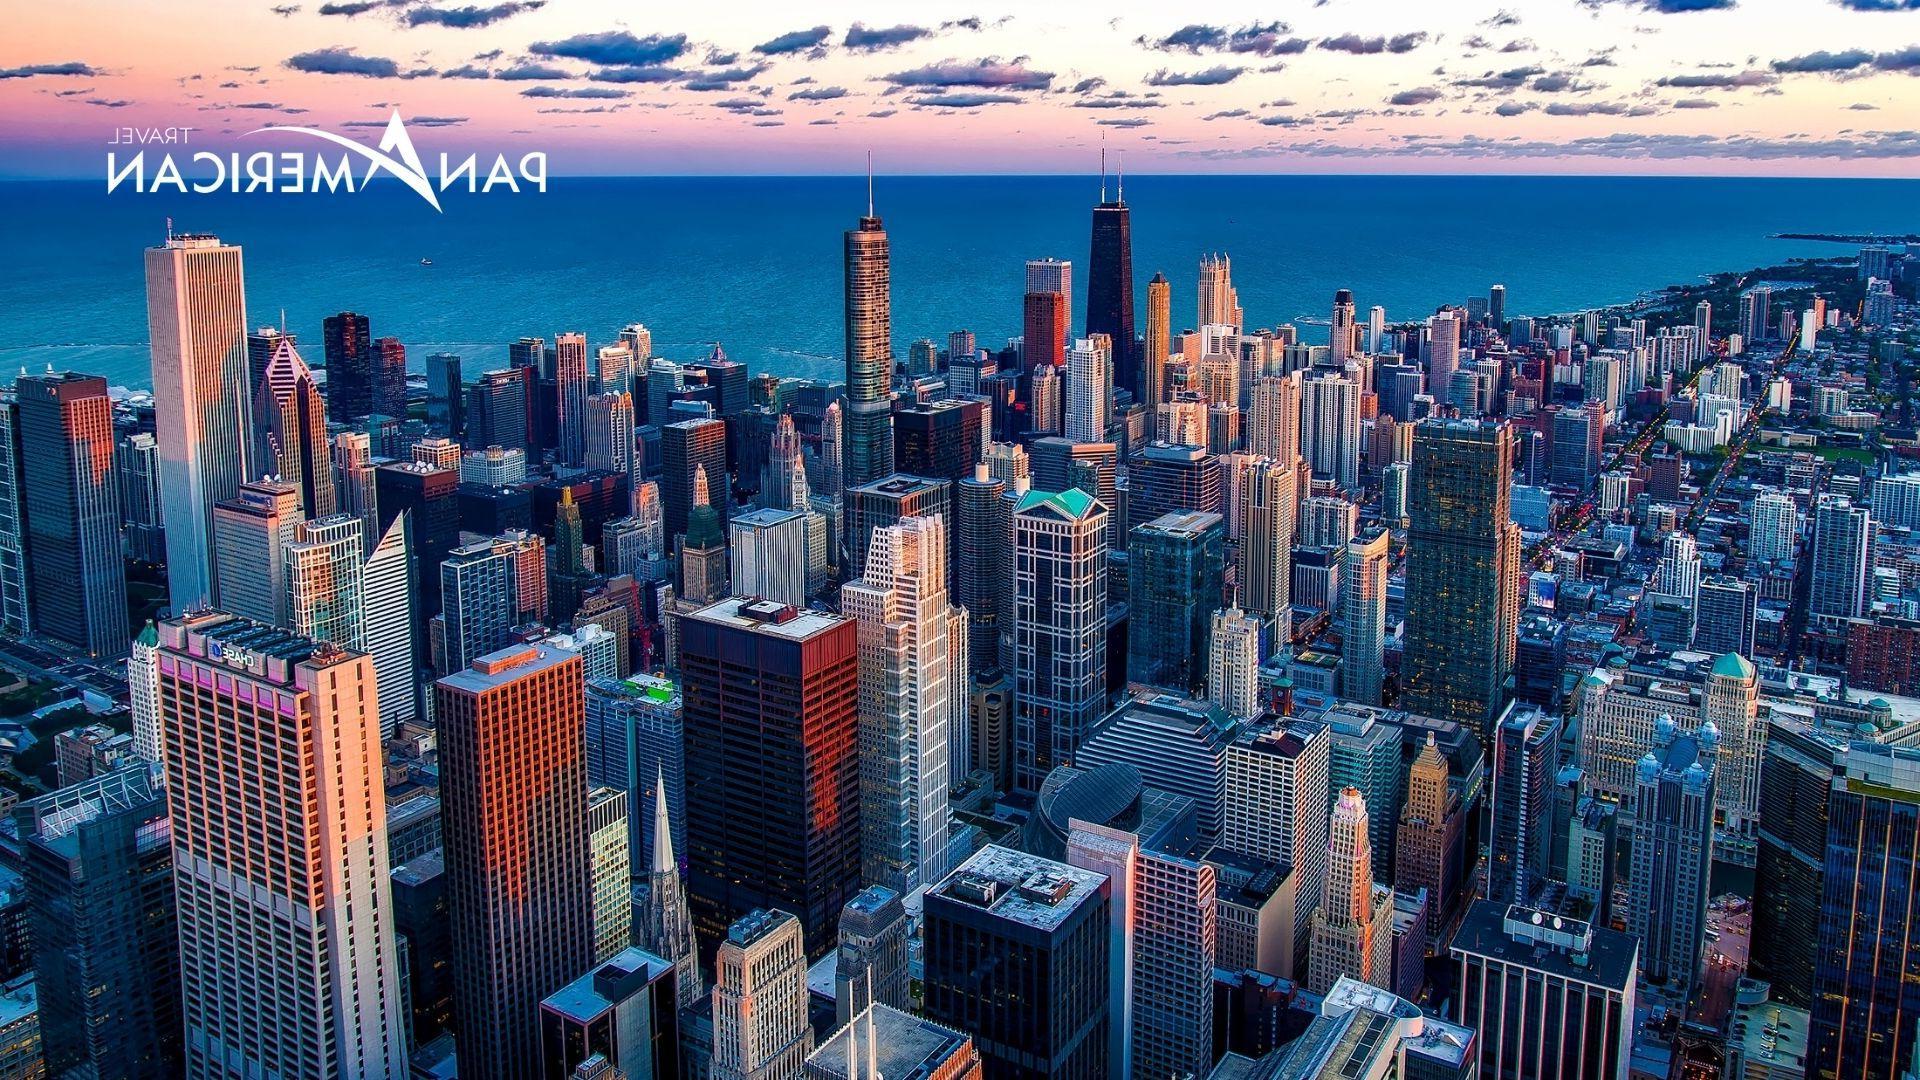 Chicago - thành phố nổi tiếng với những tòa nhà chọc trời